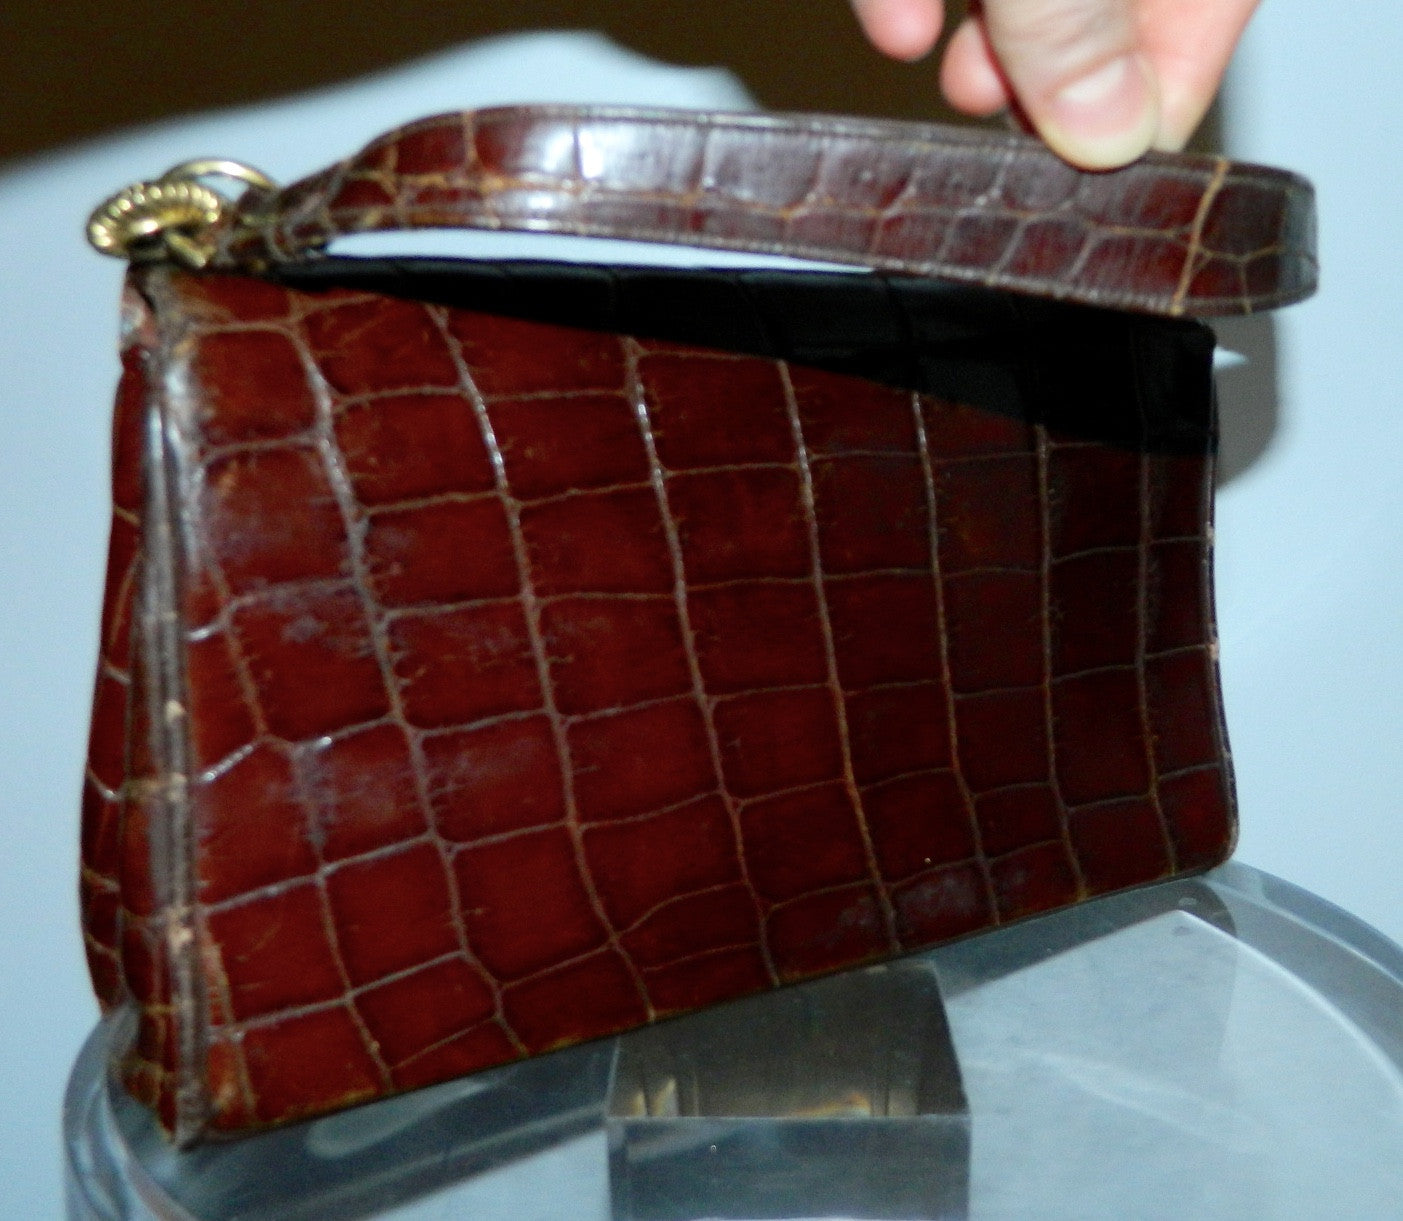 vintage LOEWE alligator handbag 1940s turn lock brown gator kelly bag